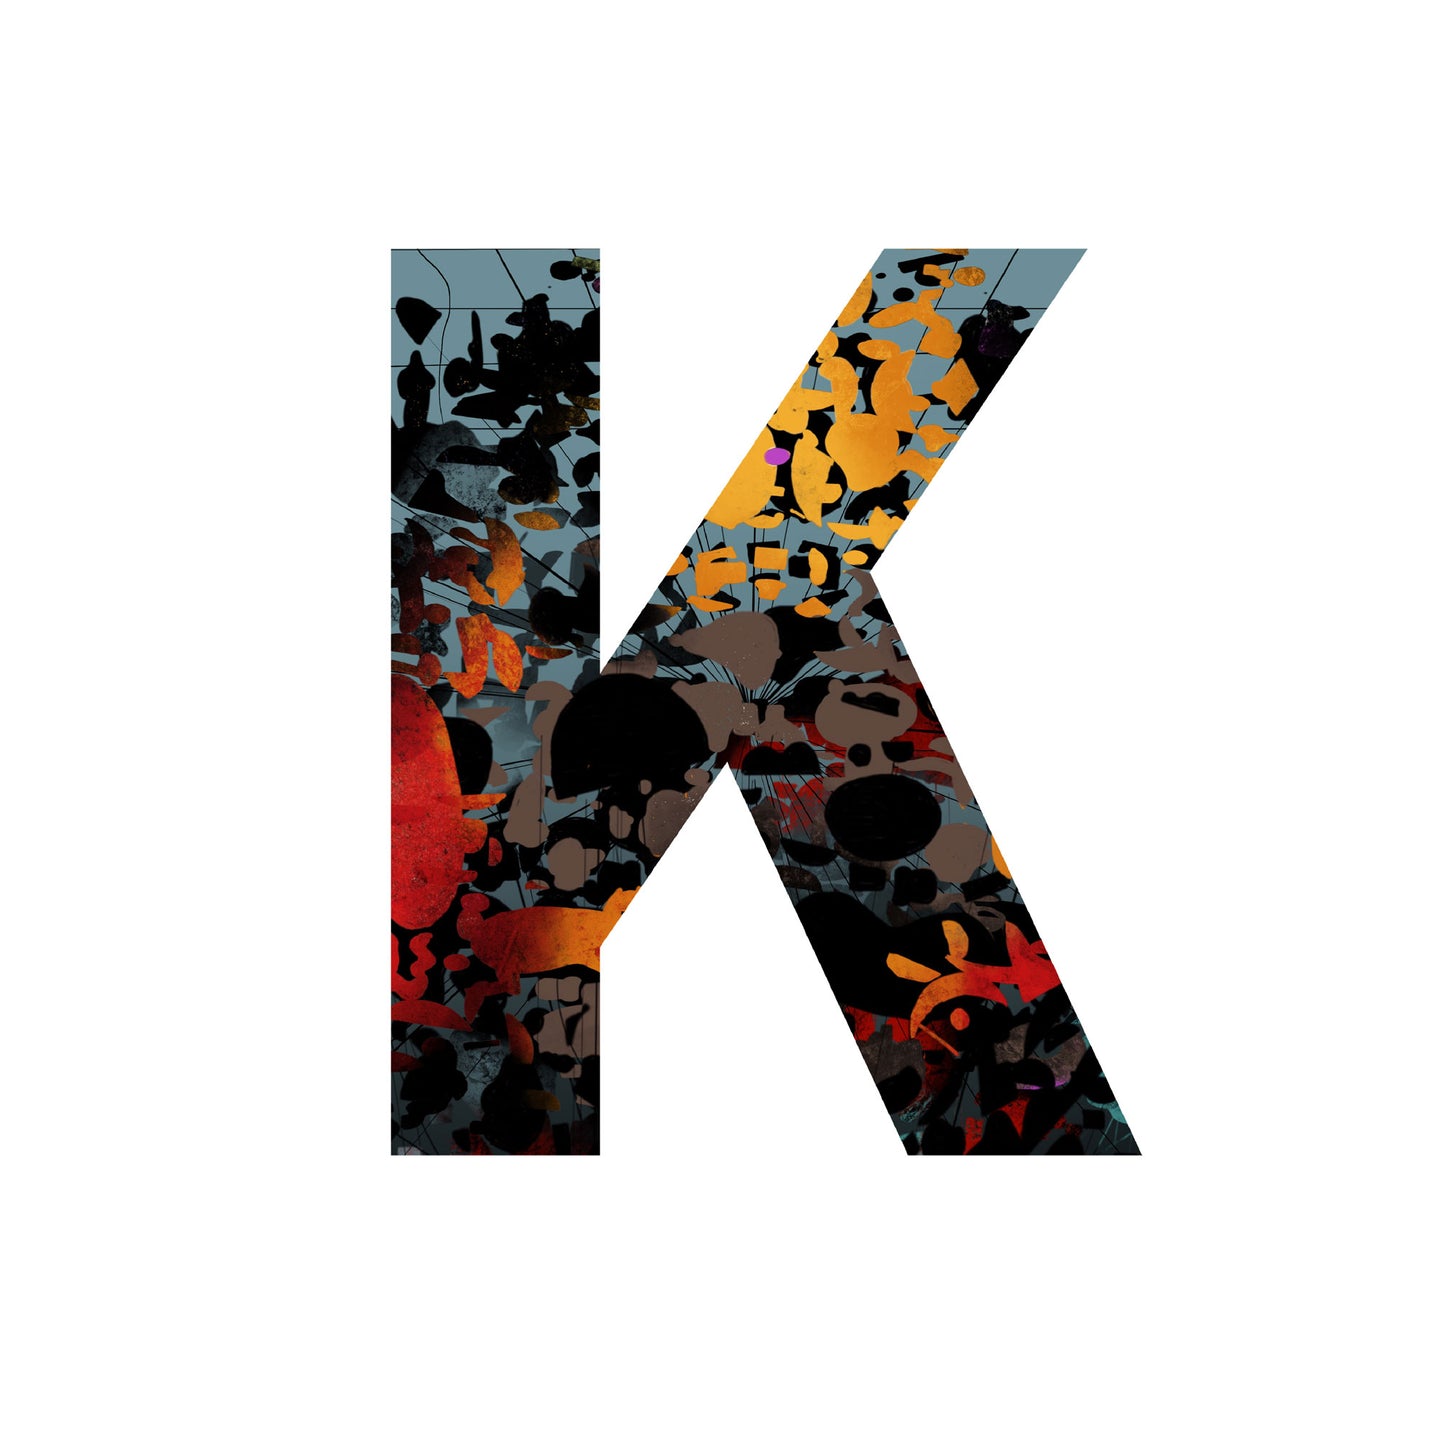 'WILD K' From the Wild Alphabet.